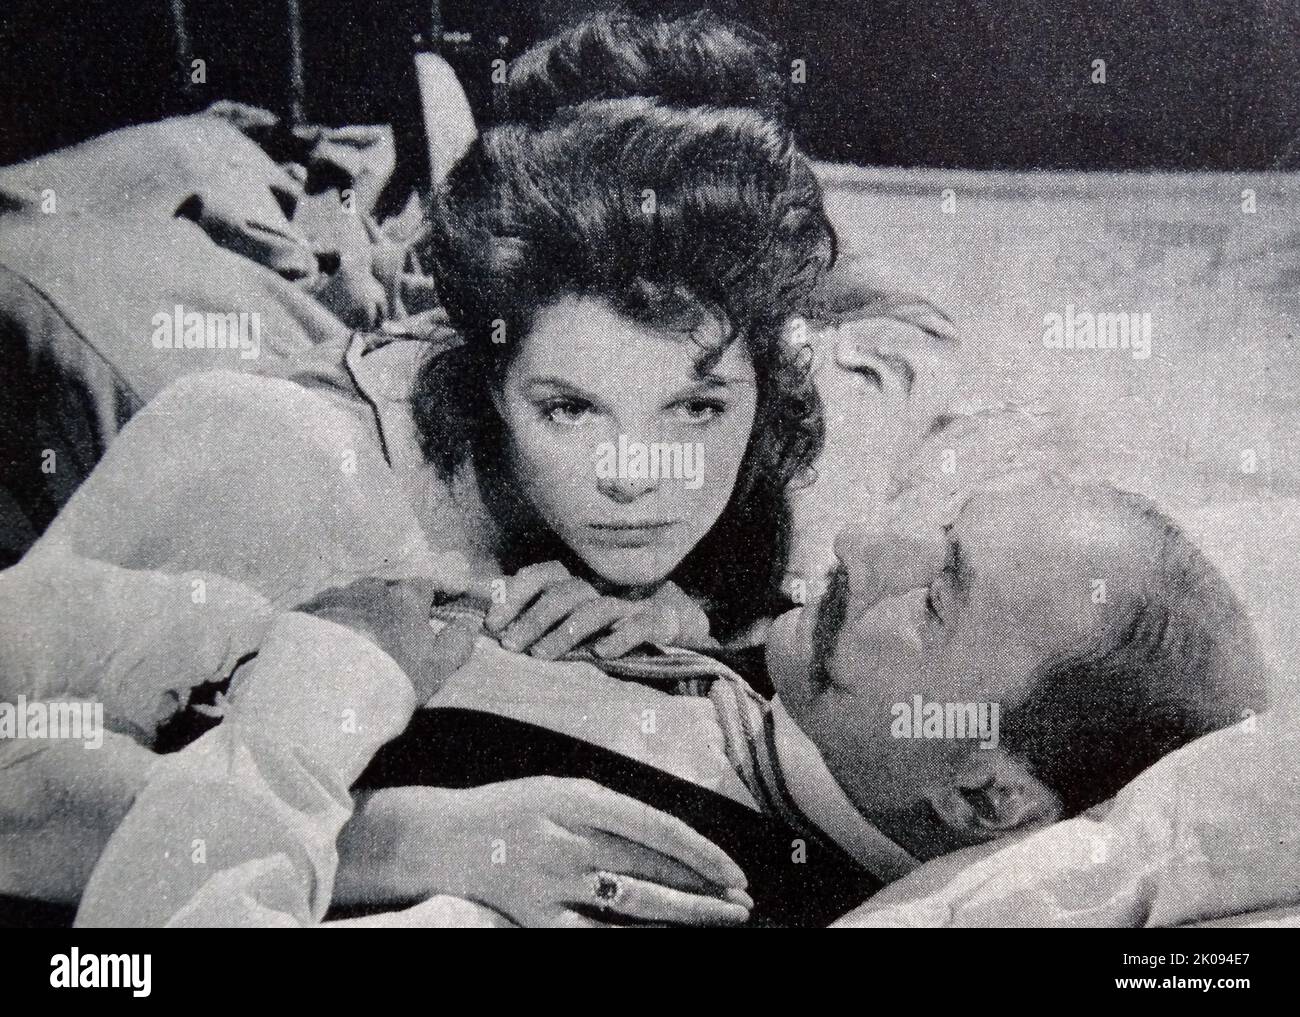 Zeitungsbericht zum Film Billy Liar von 1963, Foto von Samantha Egar und Donald Pleasance. Stockfoto